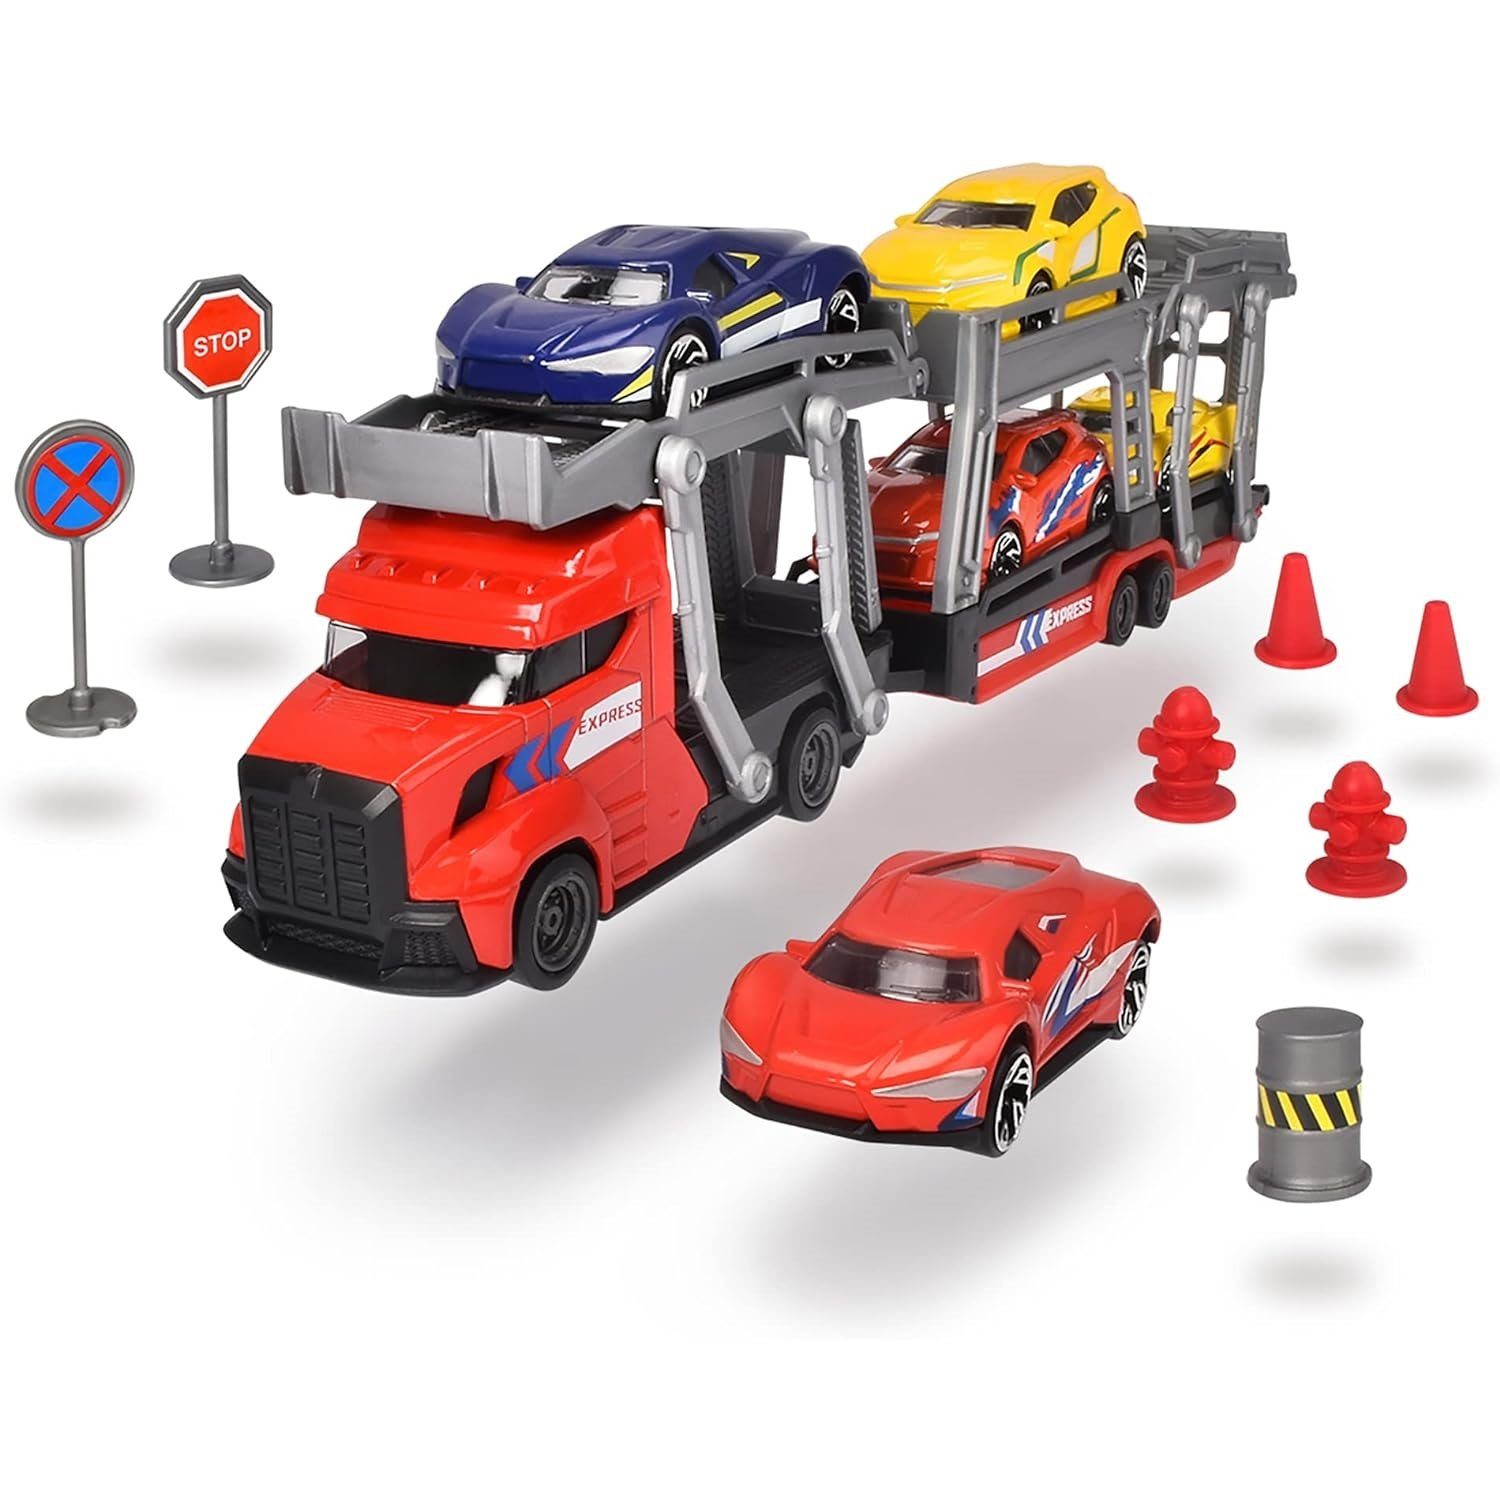 Dickie Toys Spielzeug-Transporter 203745012 Transporter Set, 2-sort.